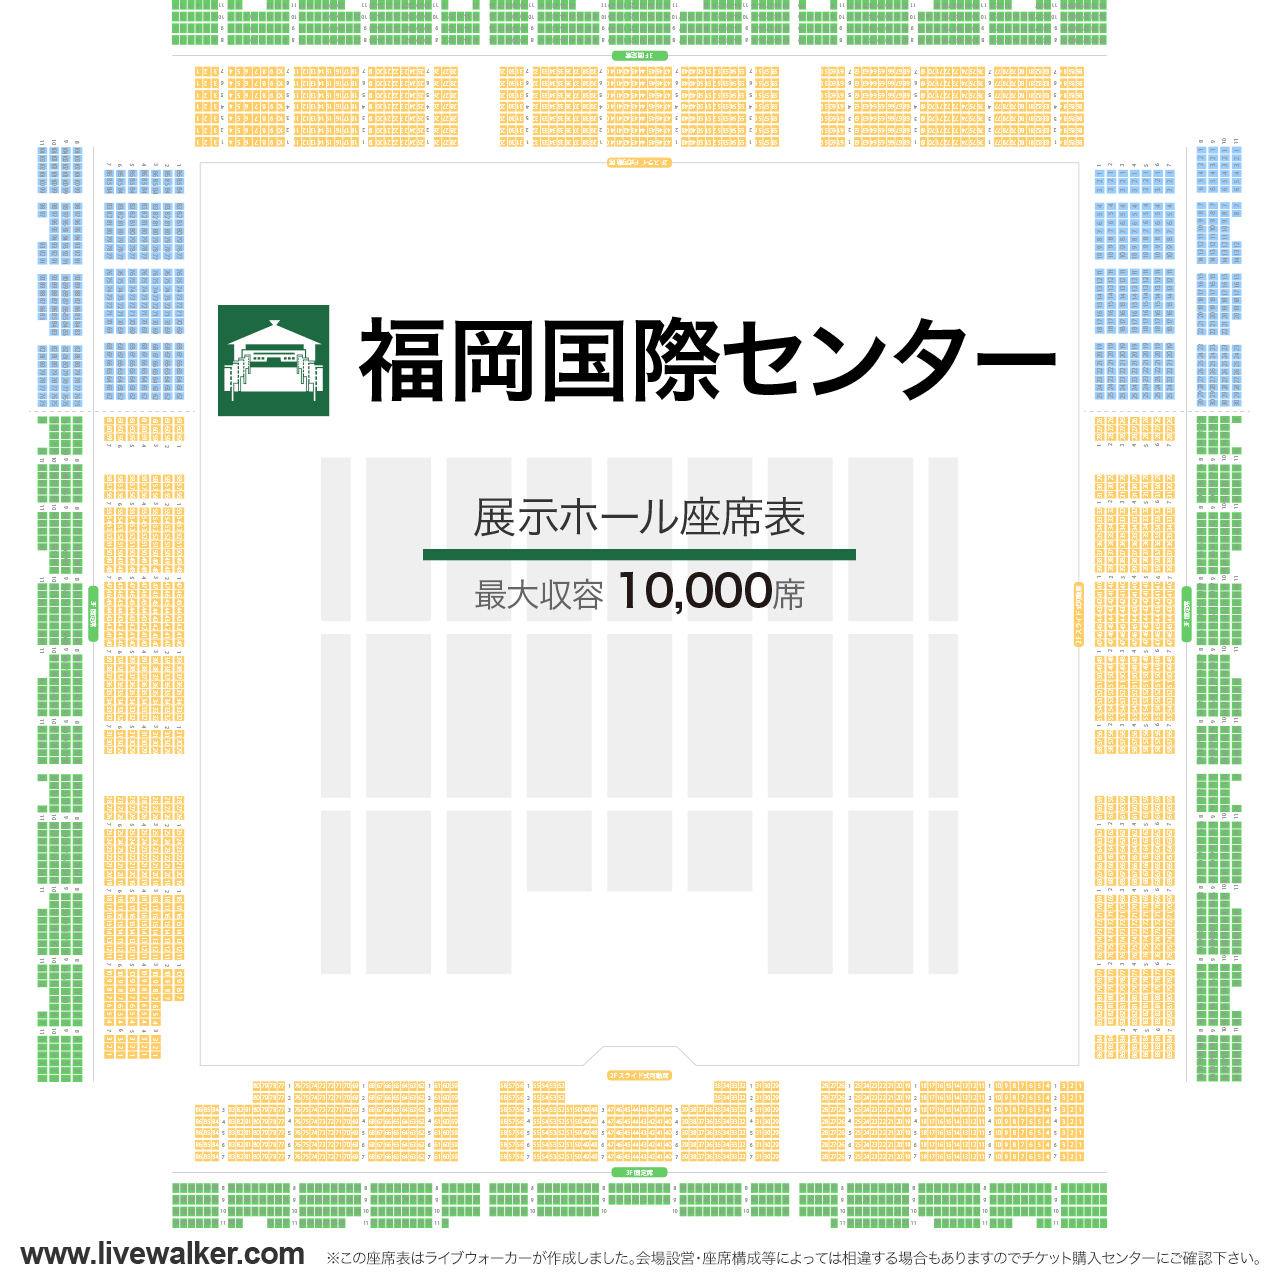 福岡国際センター展示ホールの座席表